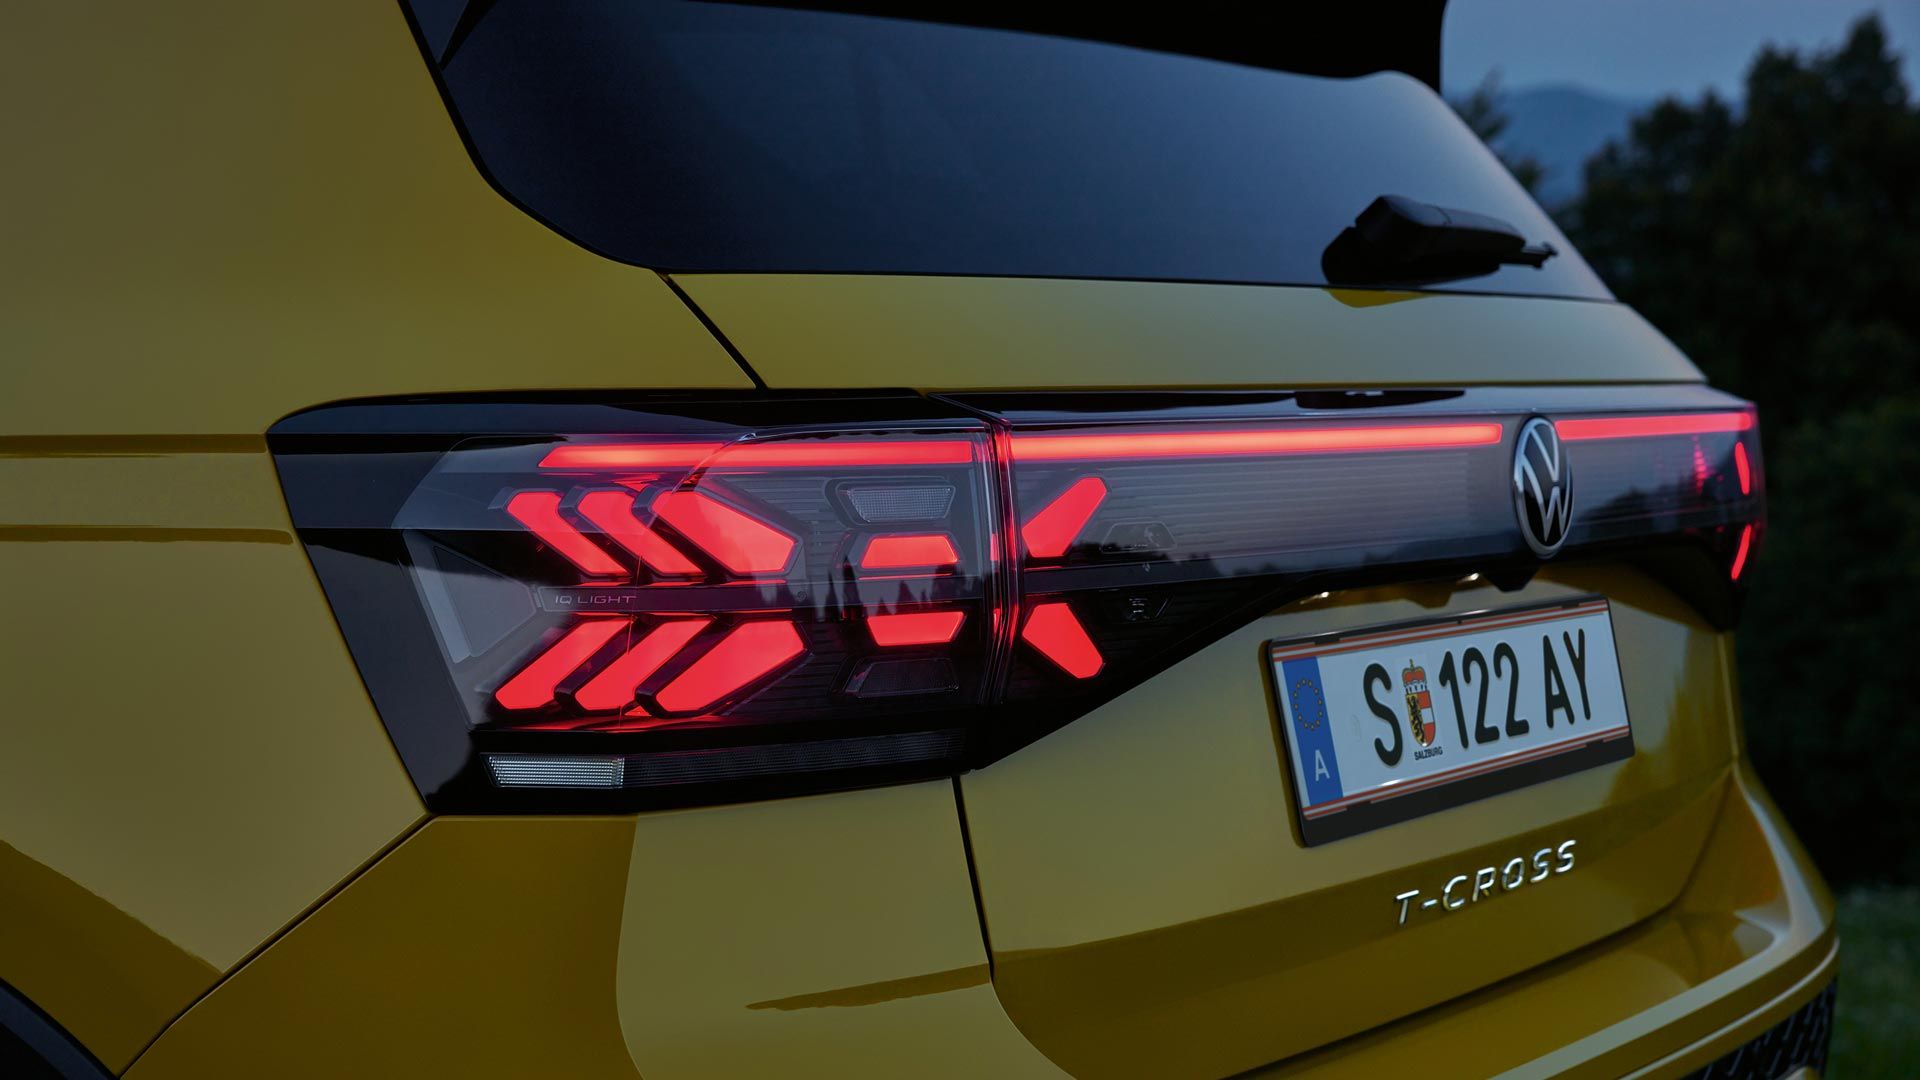 IQ. LIGHT Rückbeleuchtung eines gelben VW T-Cross in Großaufnahme in der Dämmerung.